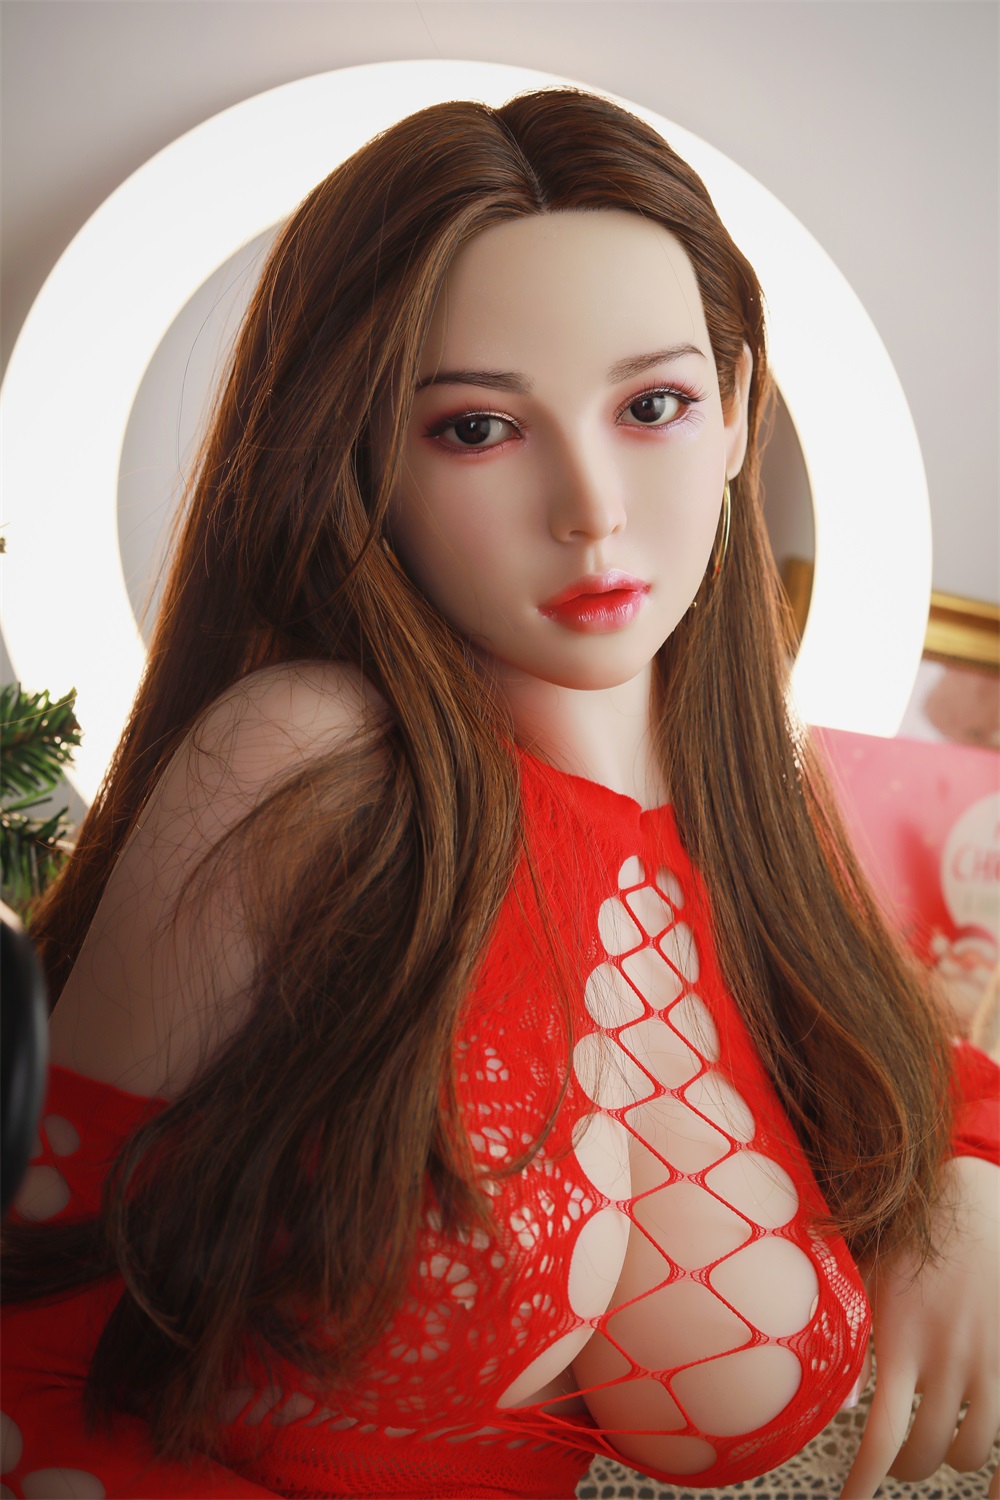 COSDOLL 协子 158cm ビッグ胸 #29 シリコンヘッド 女性 熟女 ダッチワイフ エロい アダルト 人形 巨乳 ドール